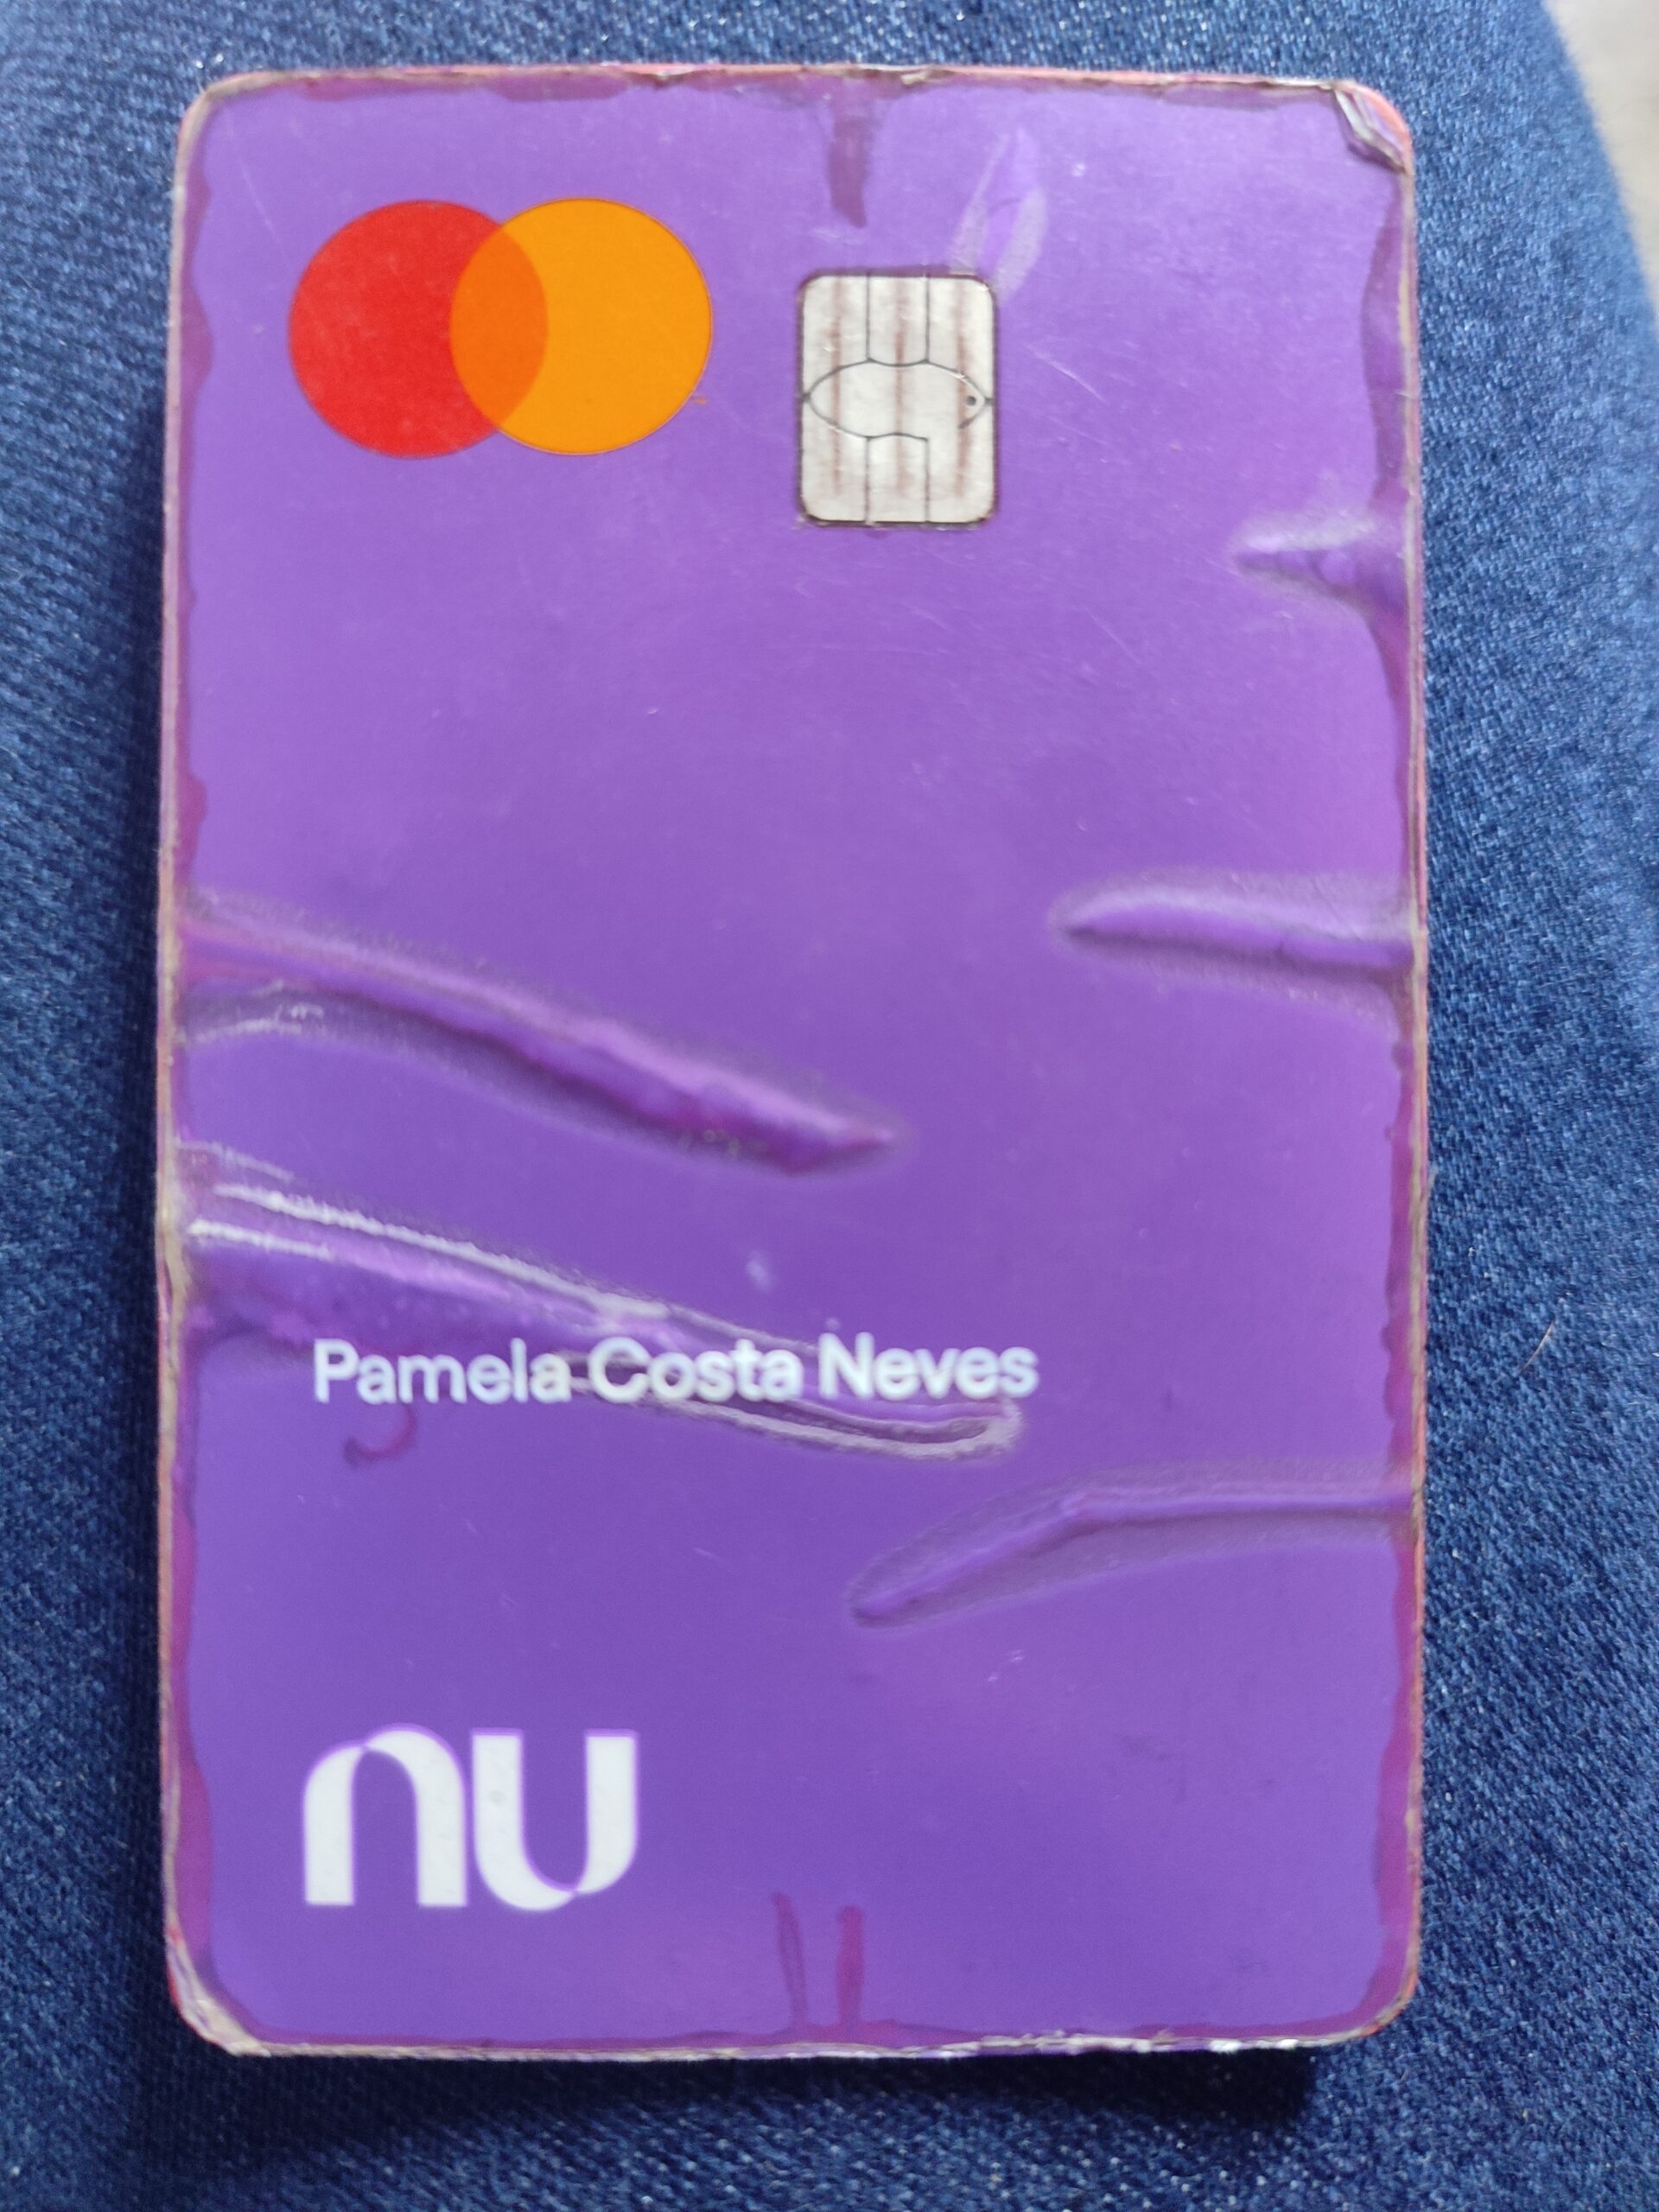 Cartão Nubank encontrado nome Pamela Costa Neves